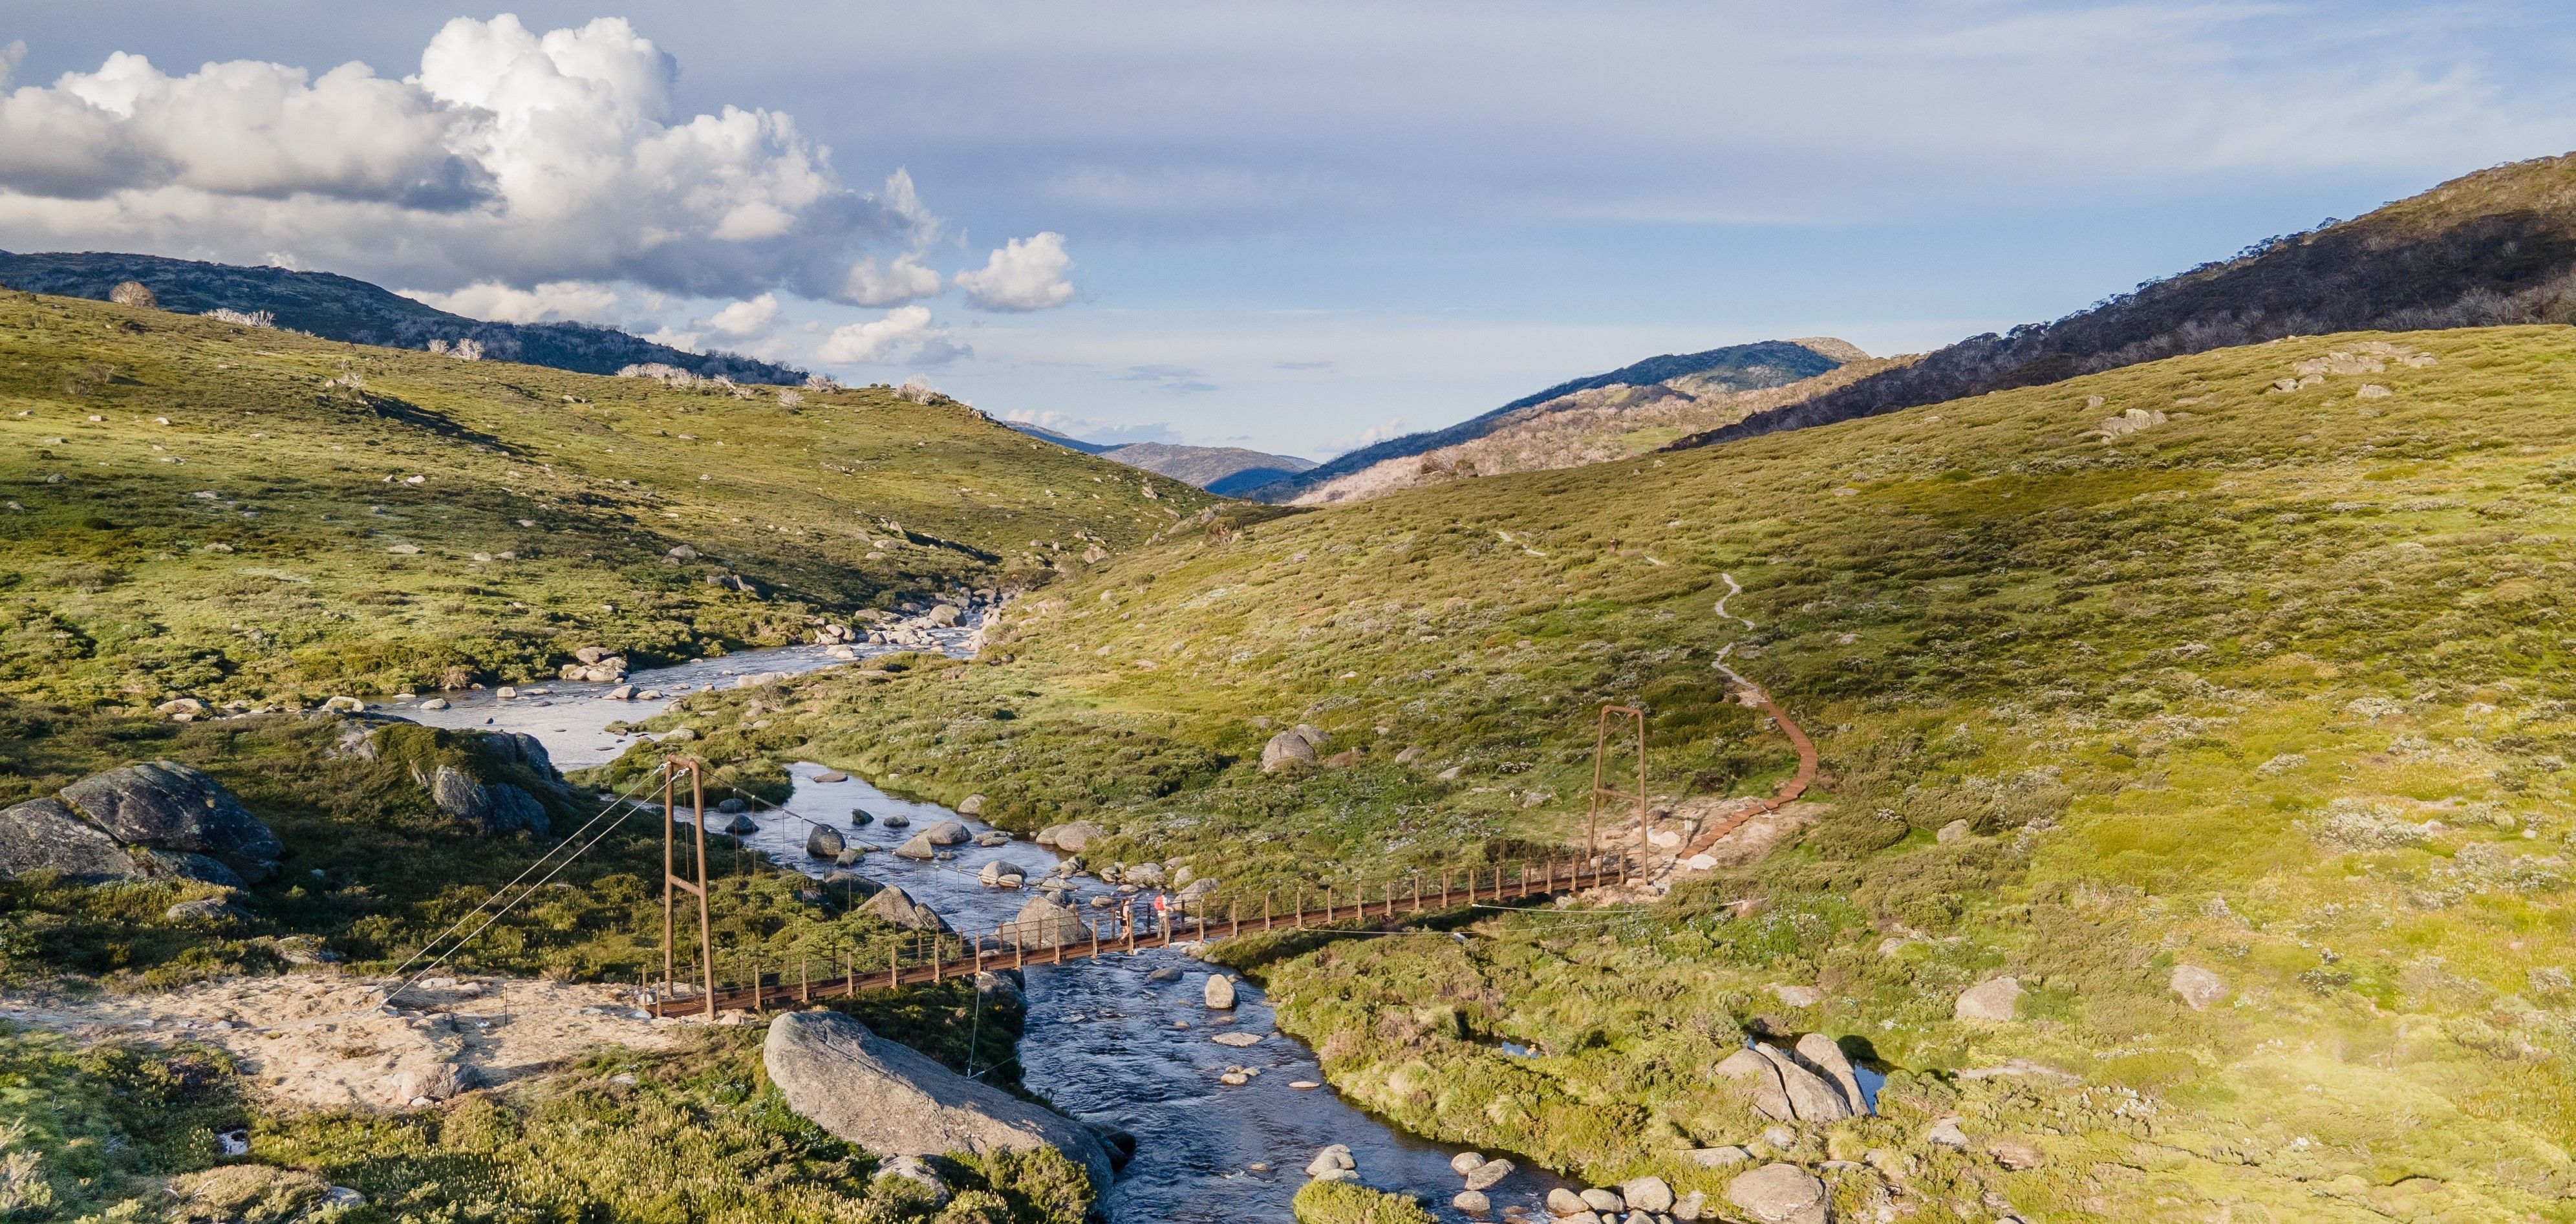 Australia's 'highest' suspension bridge opens path to alpine tourism